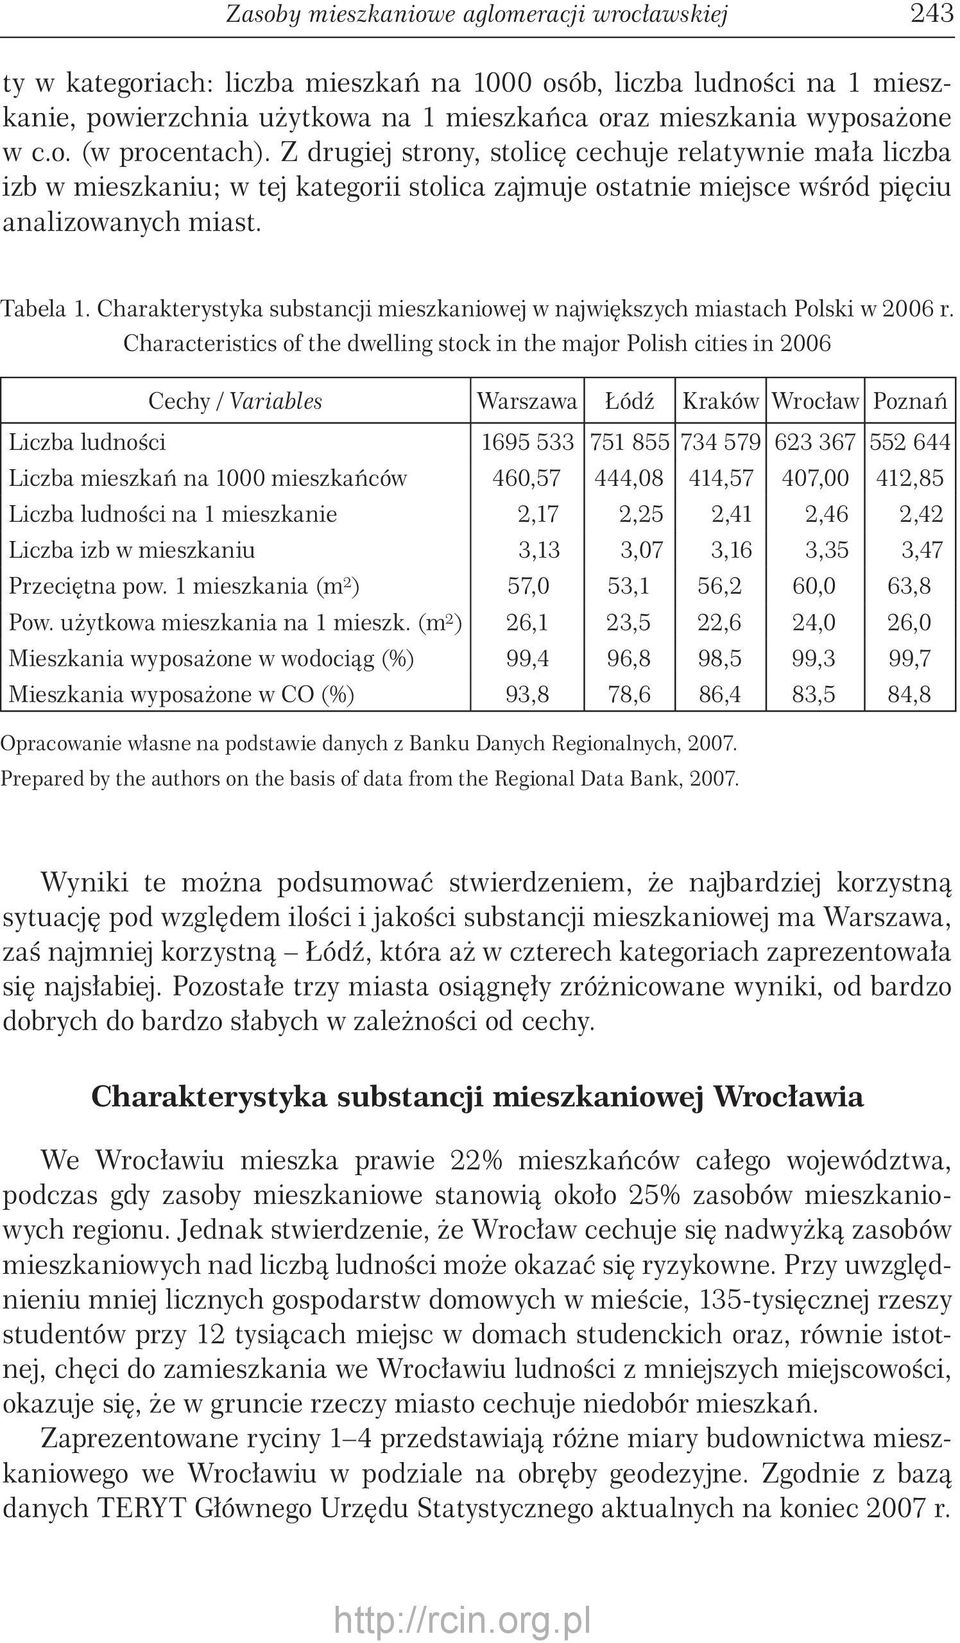 Charakterystyka substancji mieszkaniowej w największych miastach Polski w 2006 r.